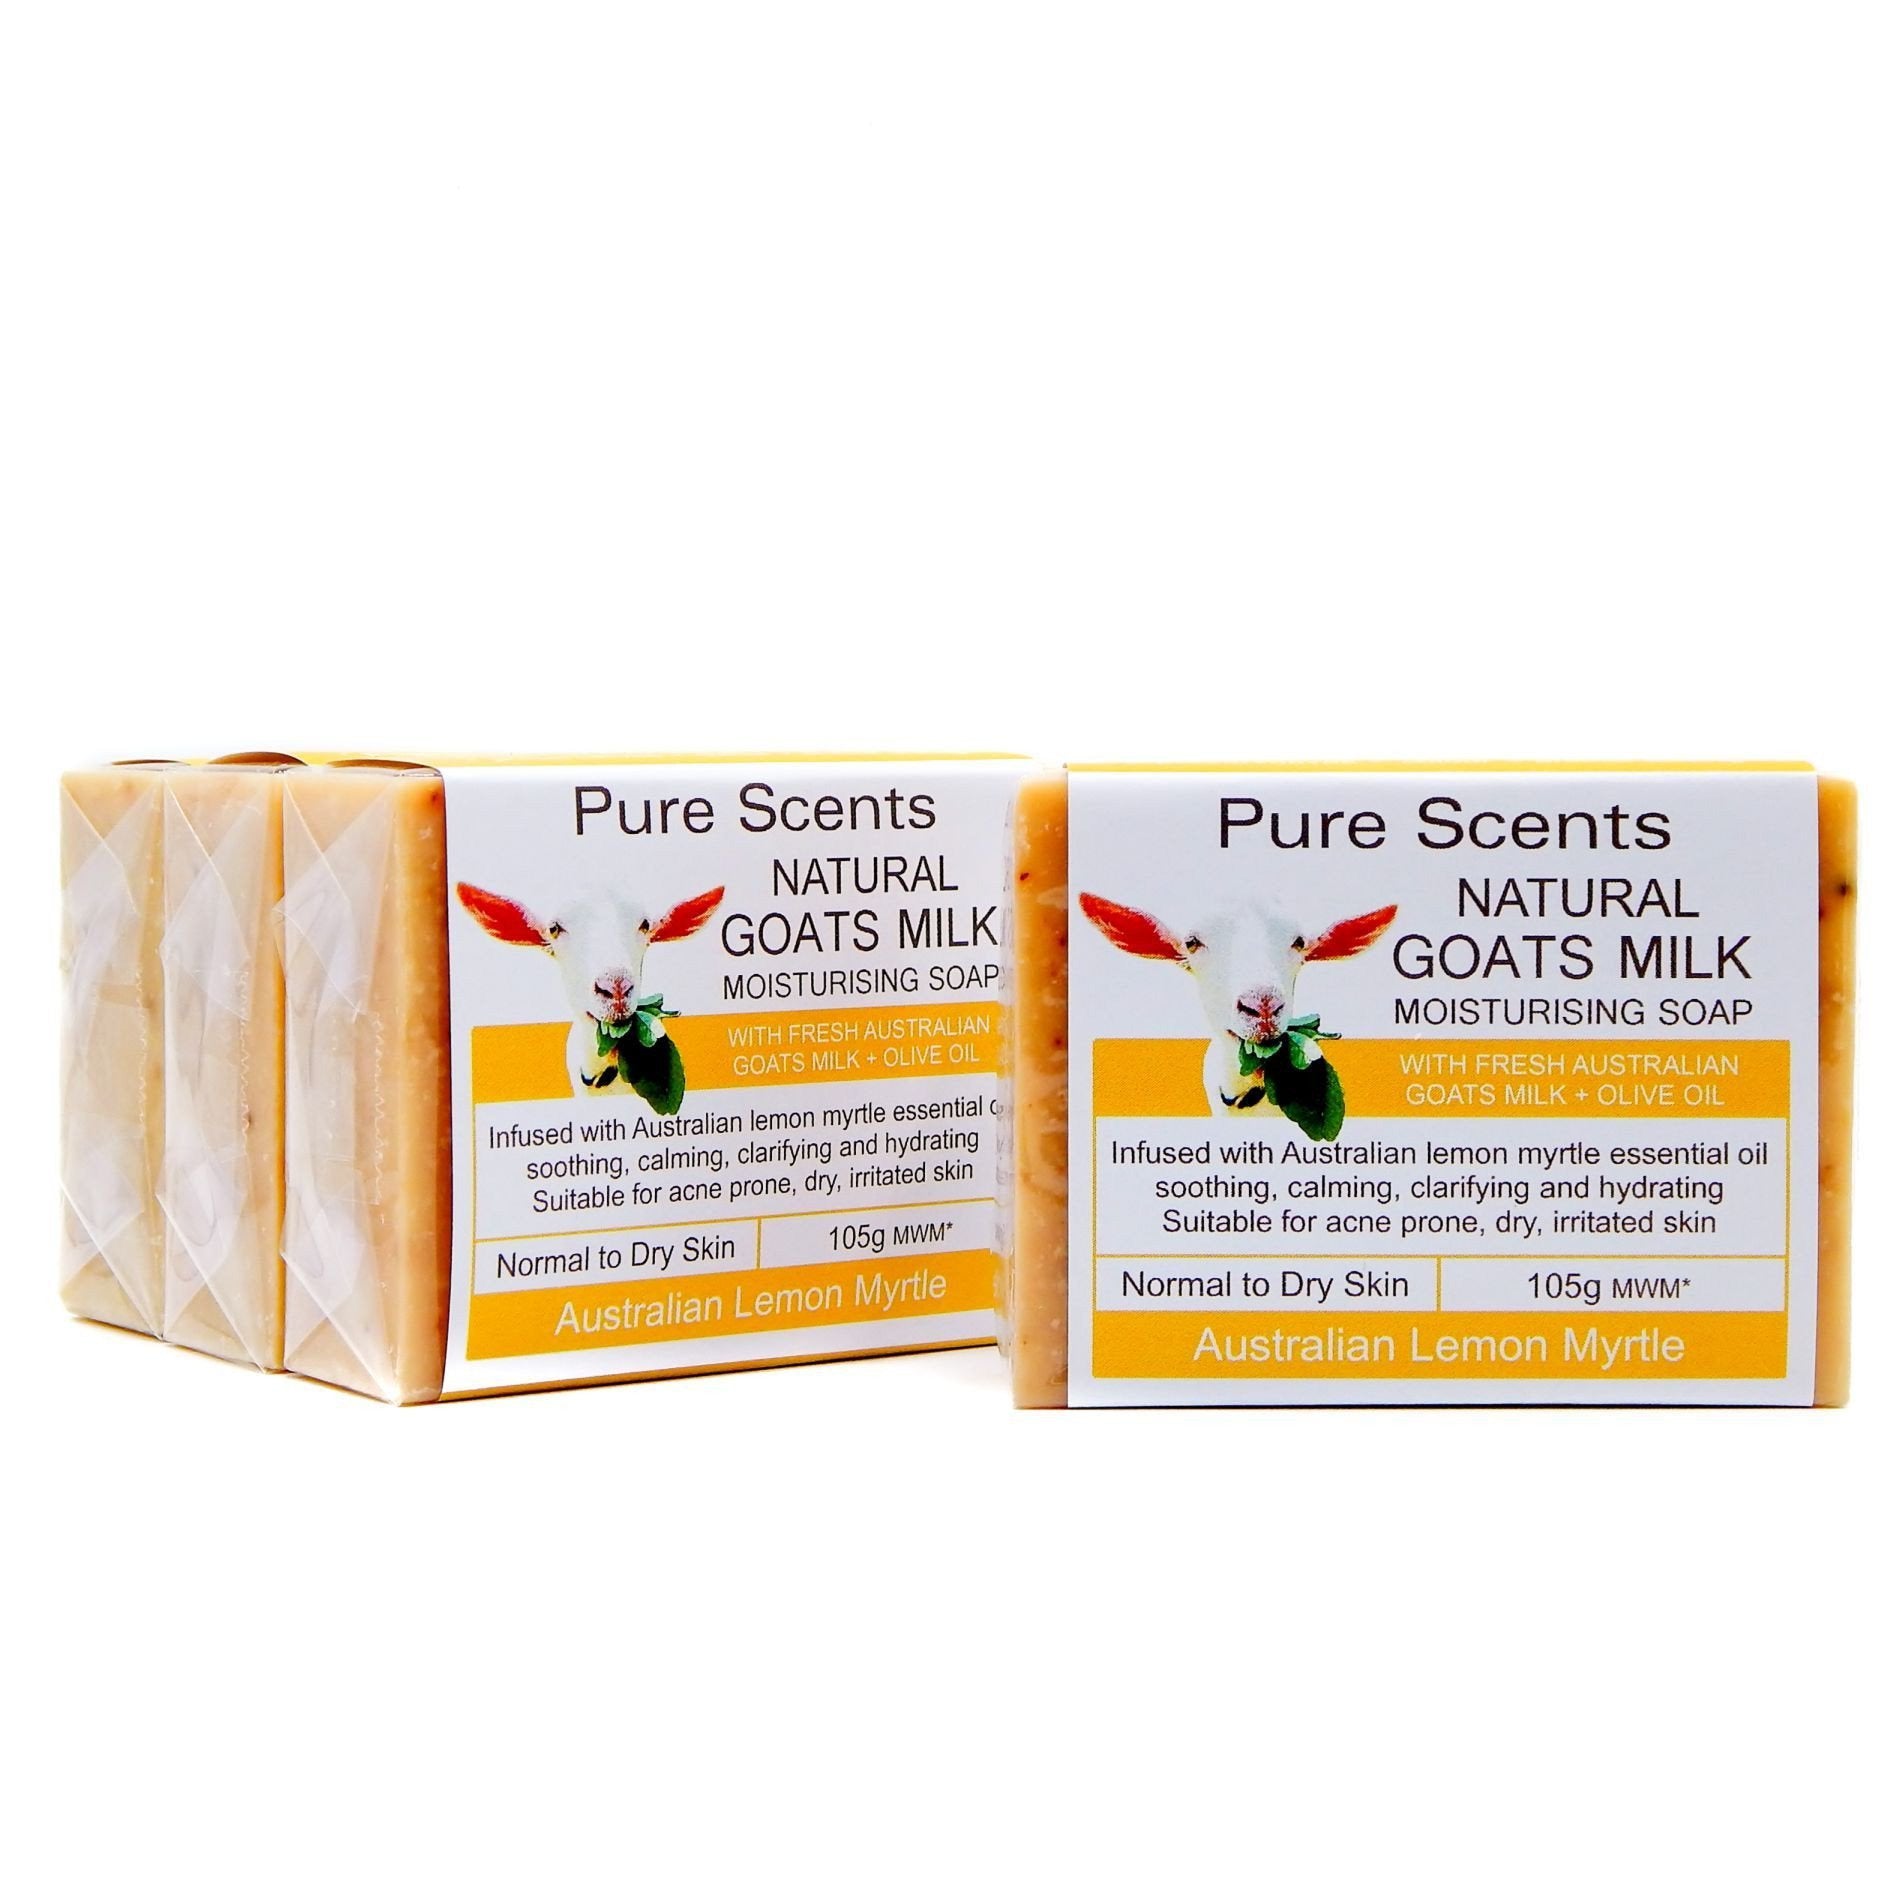 Goat Milk Soap - Lemon Myrtle Value Pack 4 x 110g - Pure Scents